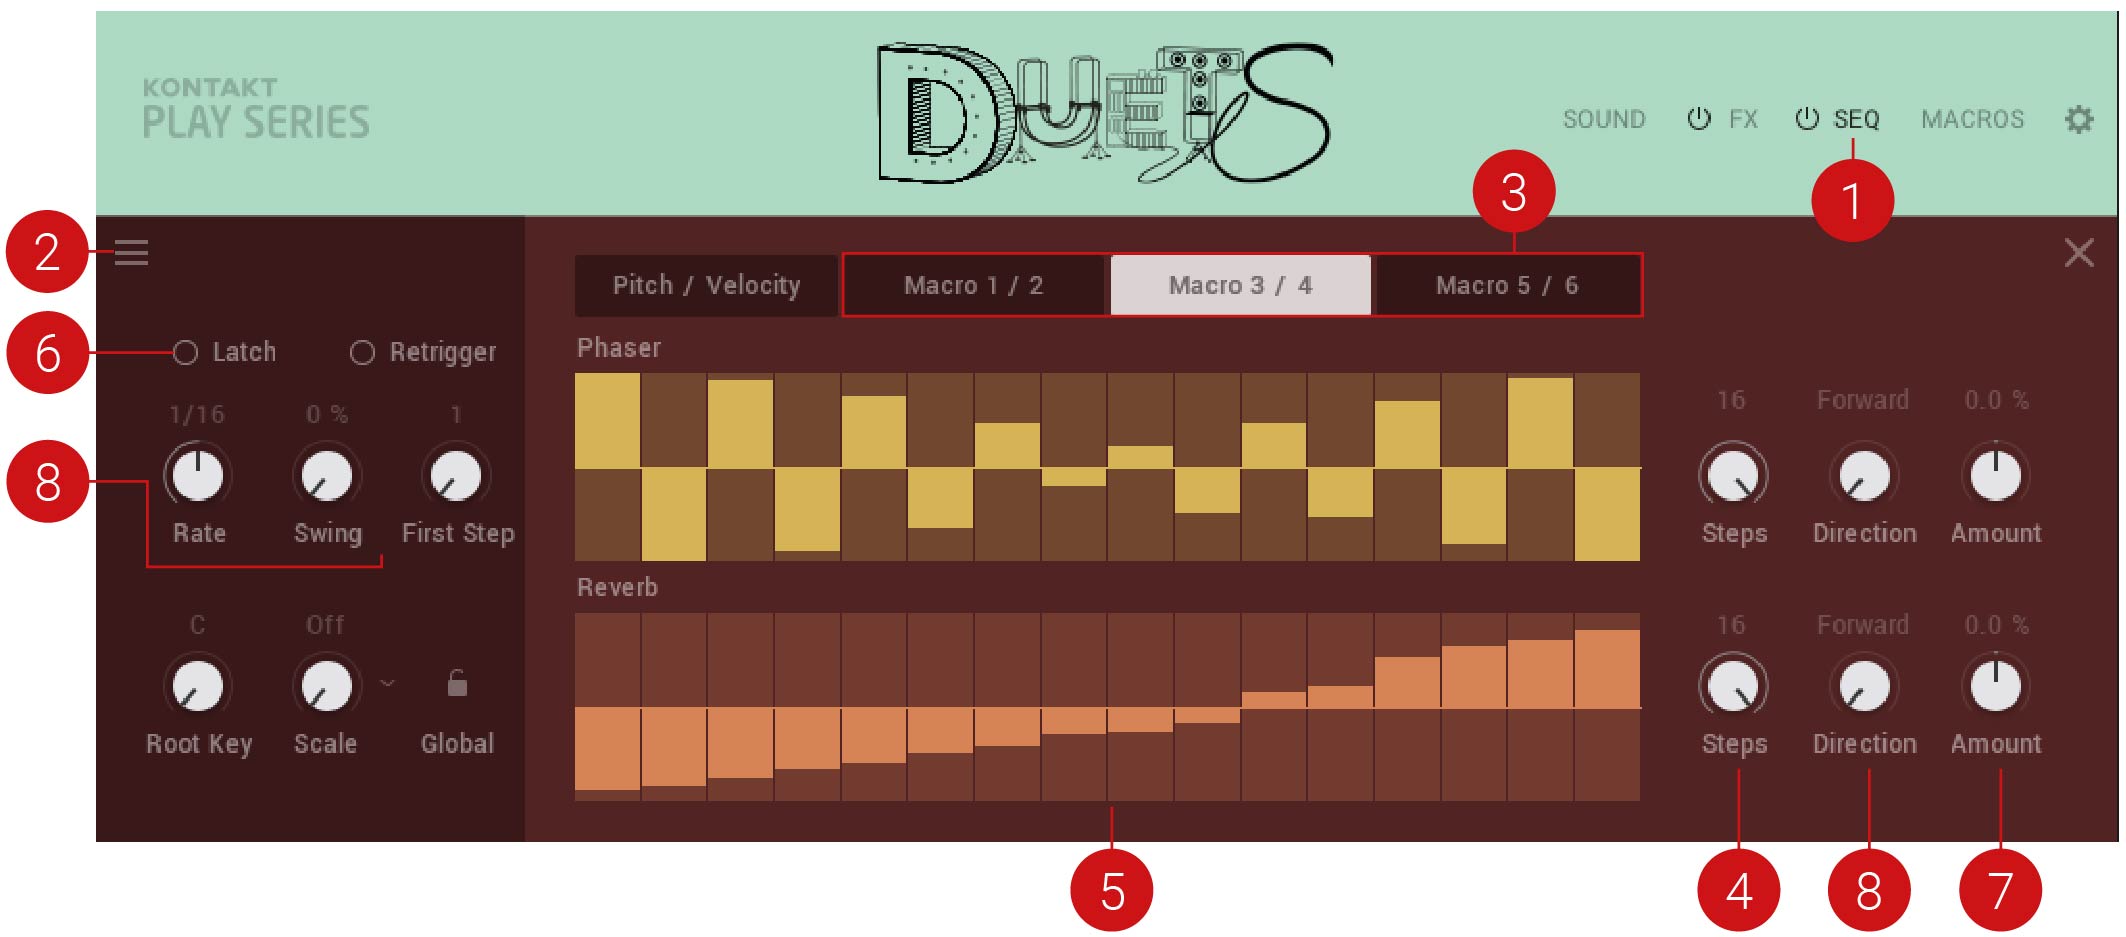 DUETS_Sequencing_Macros.jpg